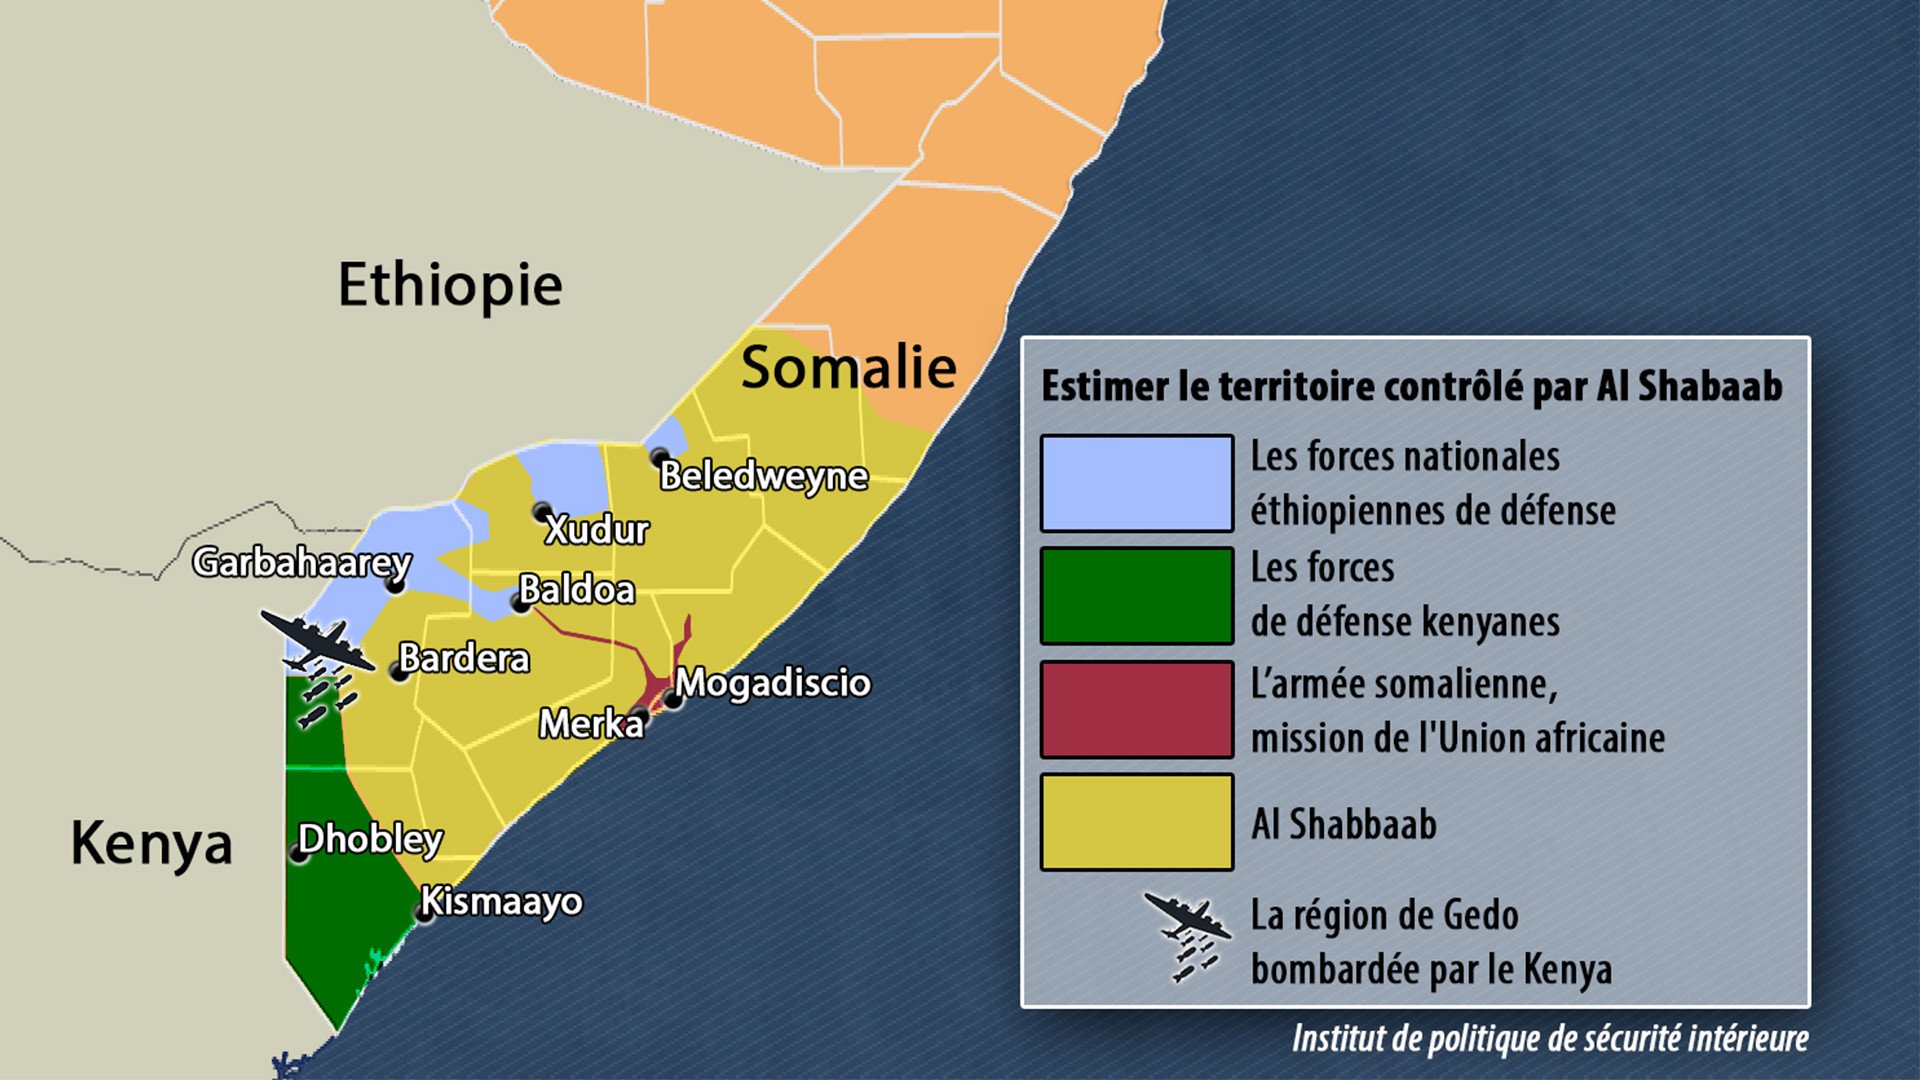 Des avions de combat kenyans bombardent les camps d’Al Shabaab en Somalie